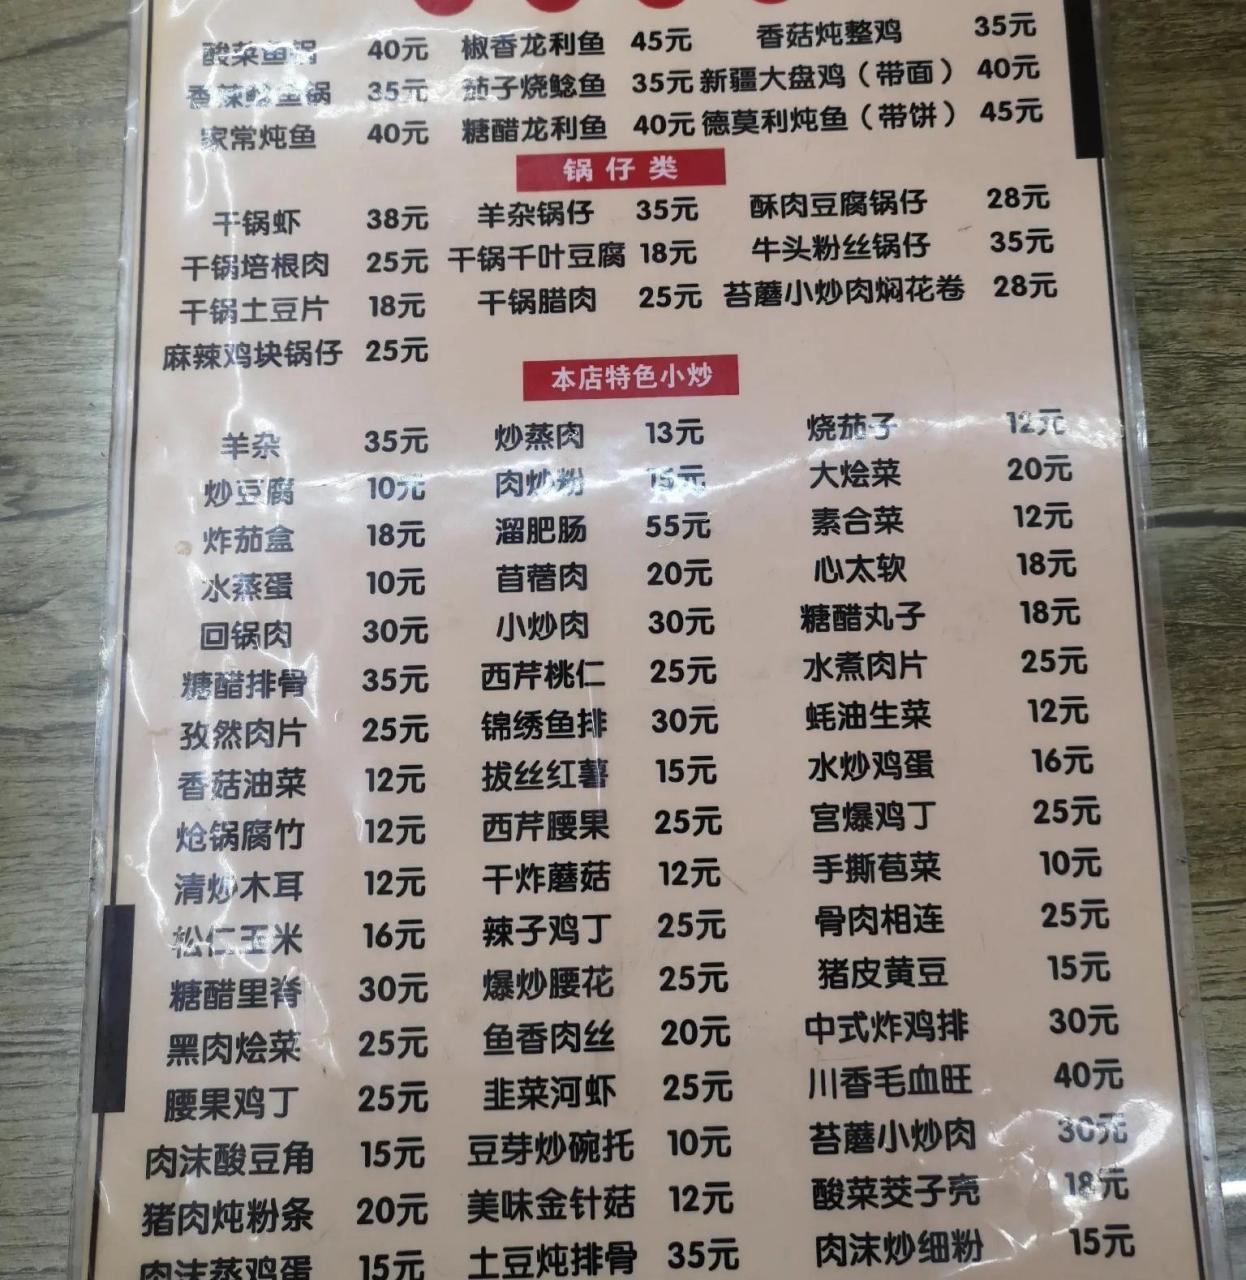 今天去山西省忻州市玩,在一个饭店看到这个菜单